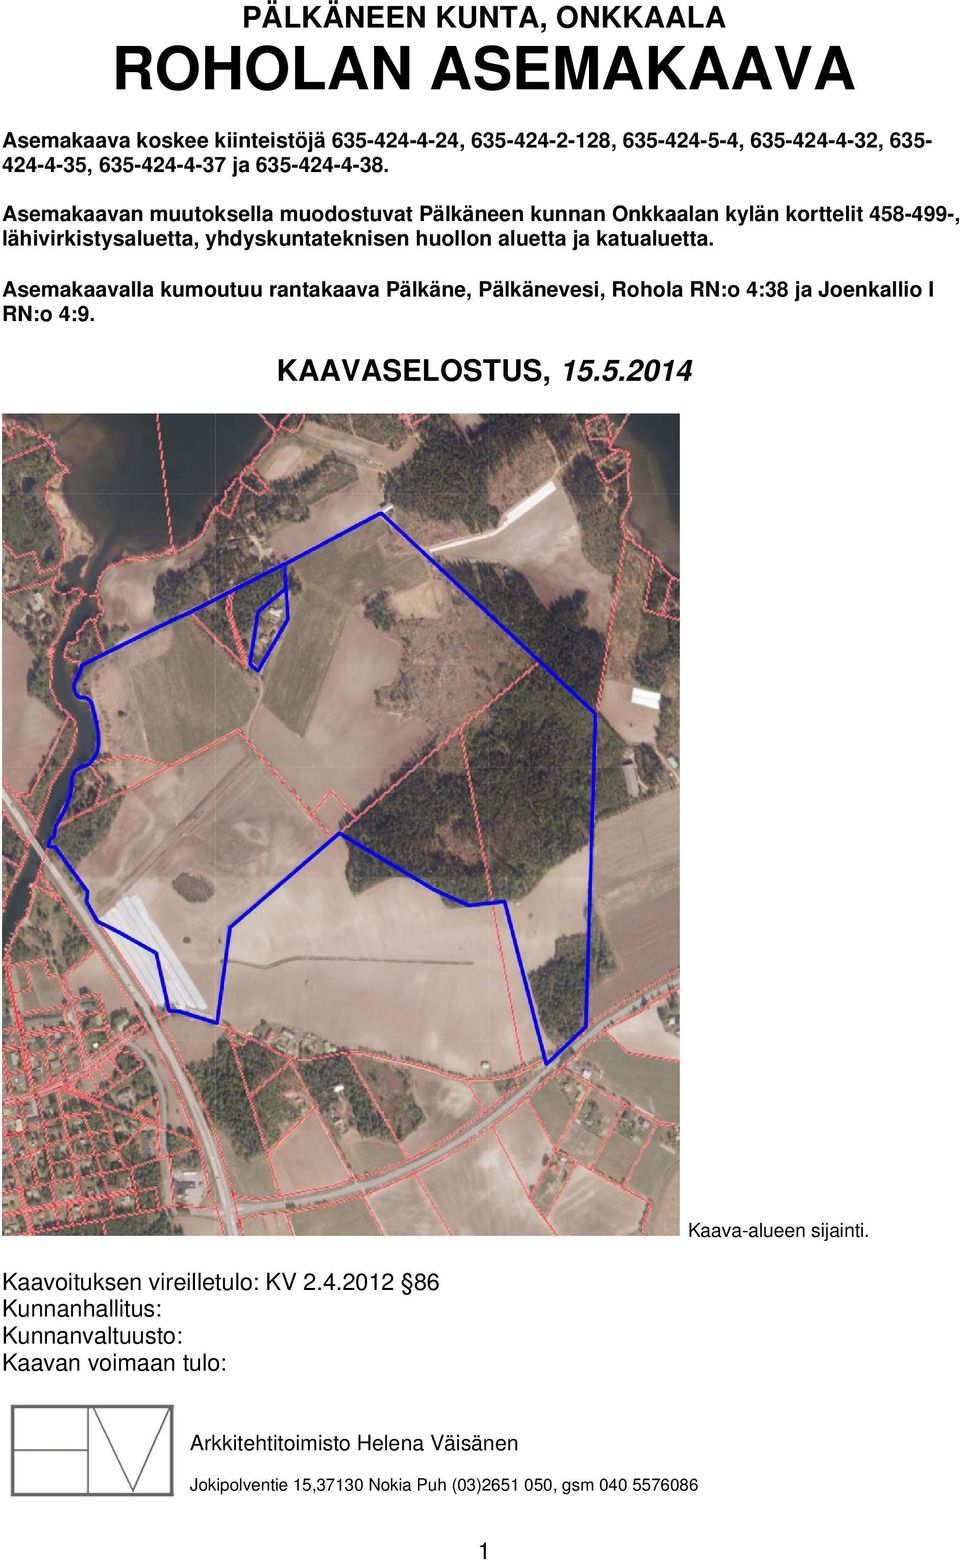 Asemakaavan muutoksella muodostuvat Pälkäneen kunnan Onkkaalan kylän korttelit 458-499-, lähivirkistysaluetta, yhdyskuntateknisen huollon aluetta ja katualuetta.